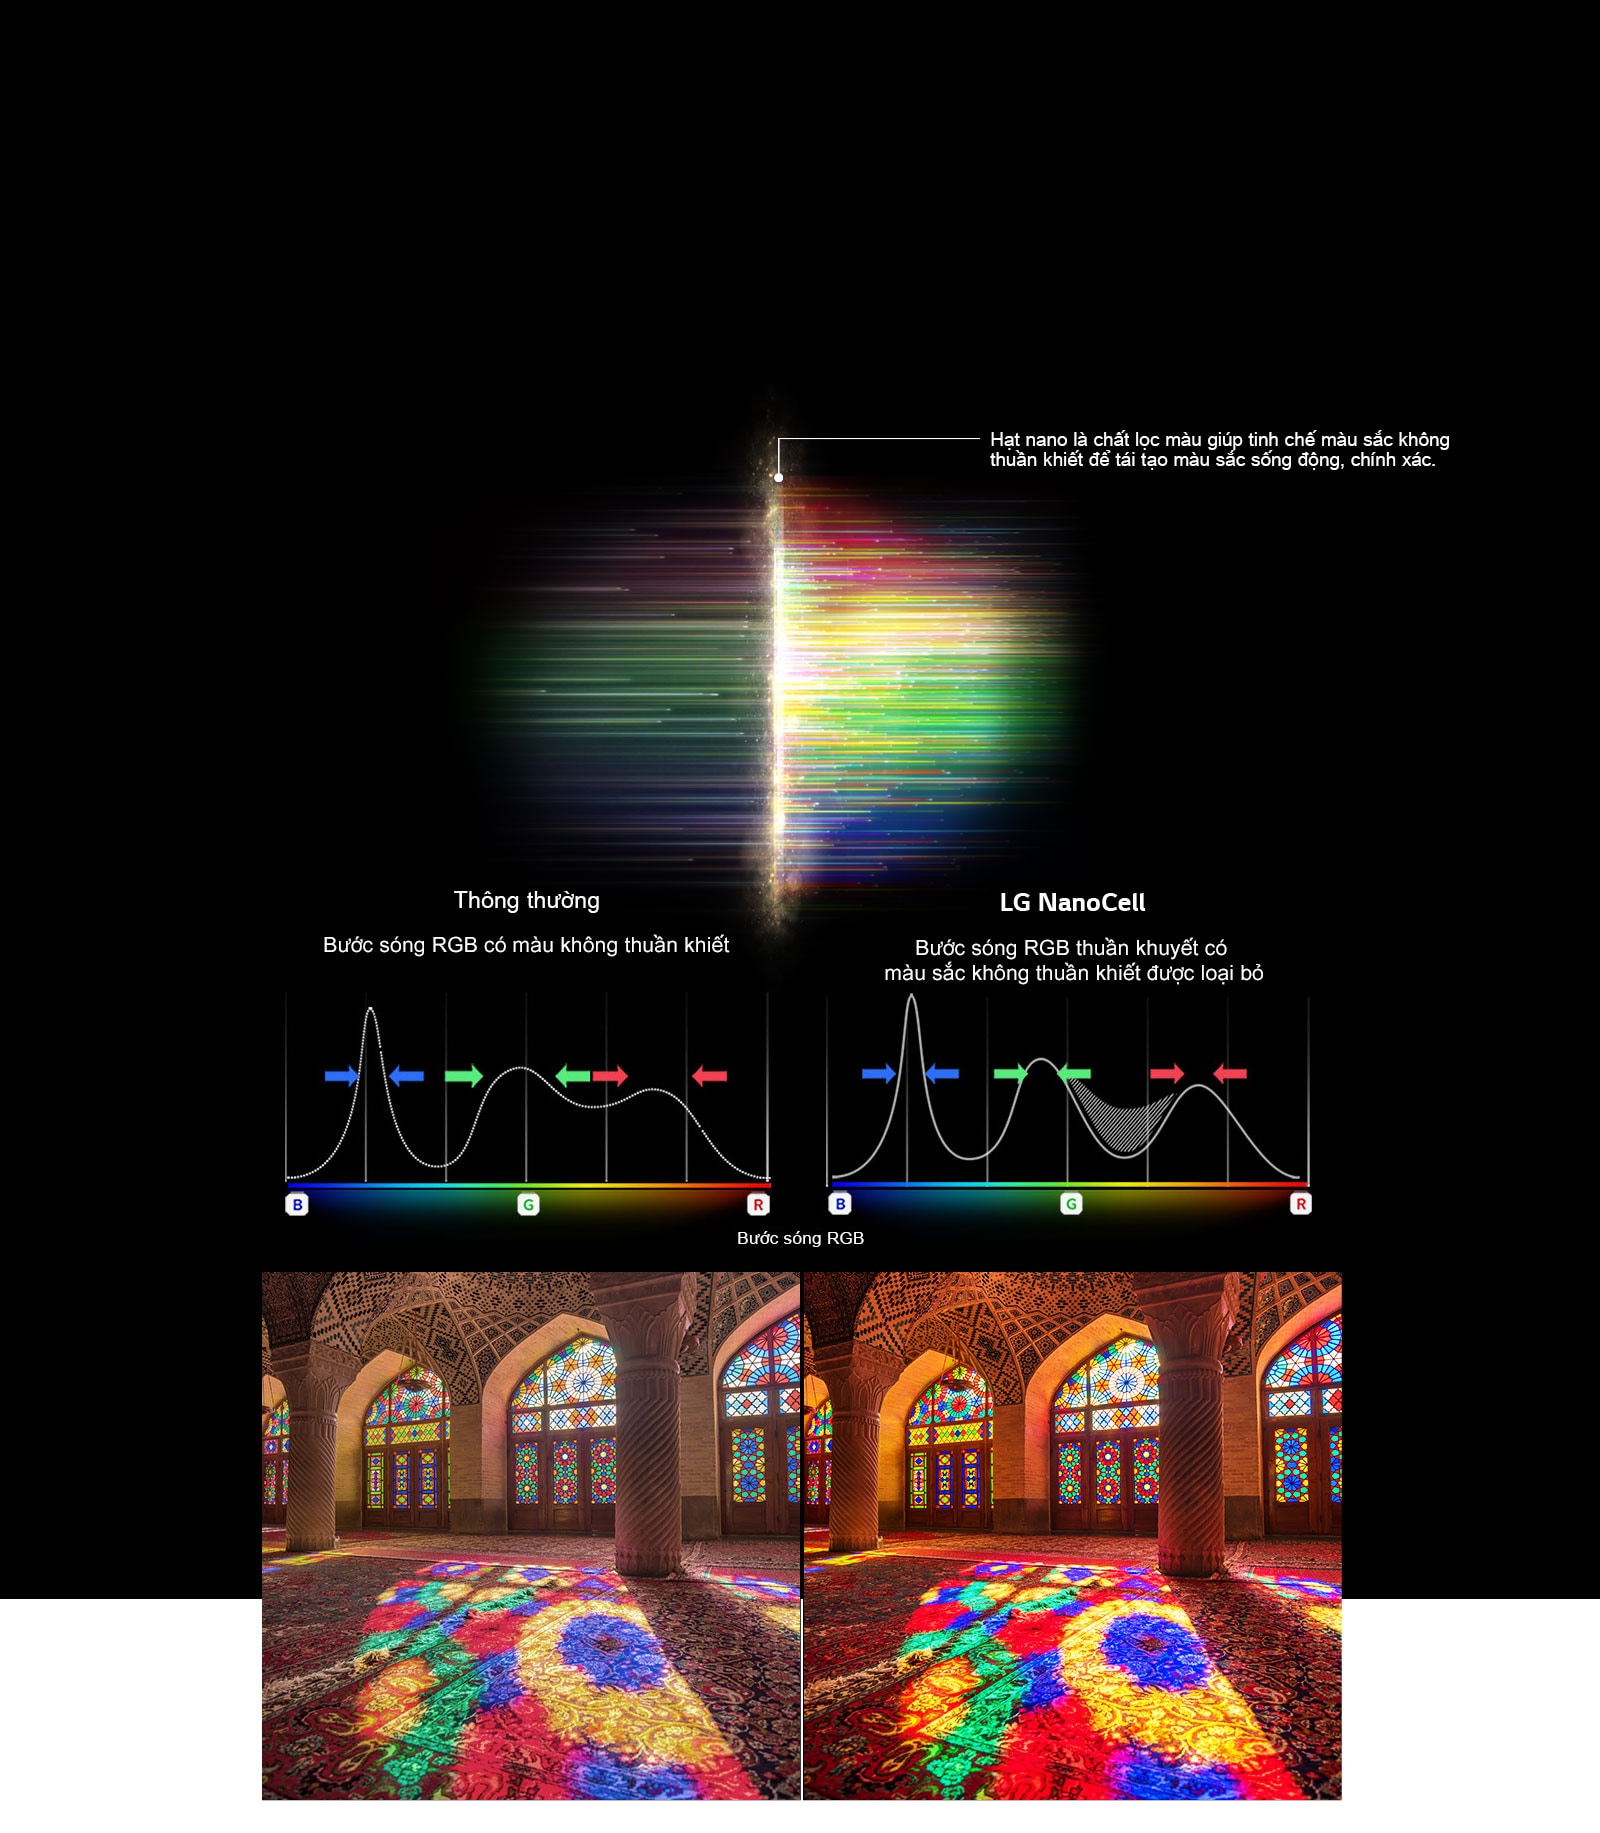 Biểu đồ phổ RGB hiển thị bộ lọc màu sắc và hình ảnh mờ so sánh Độ tinh khiết màu giữa Công nghệ thông thường và Công nghệ NanoCell